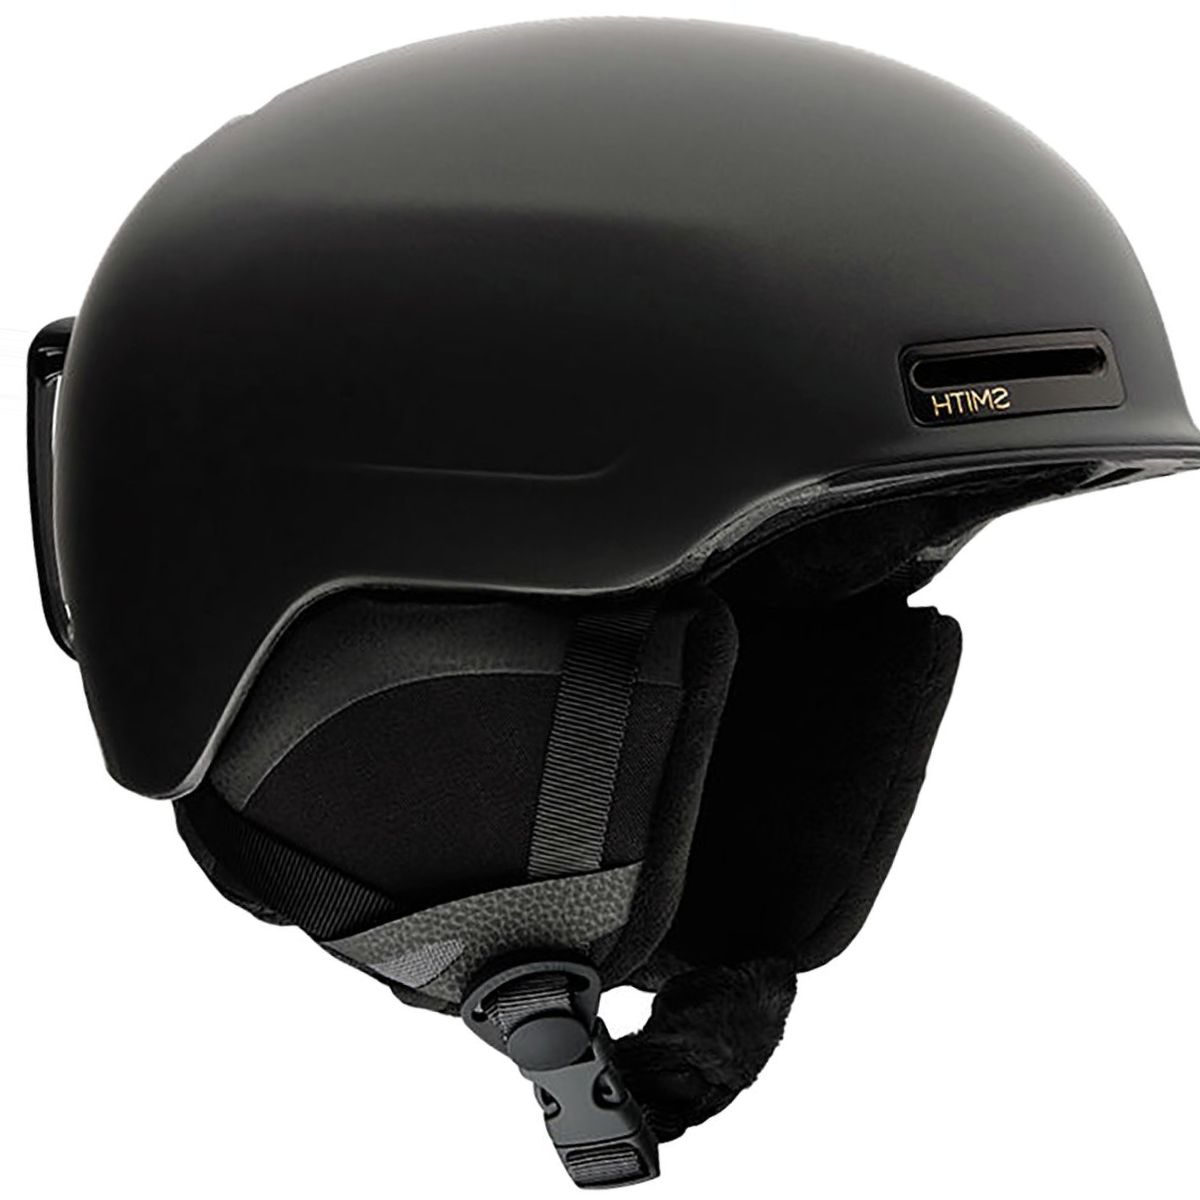 Smith Allure Helmet - Women's